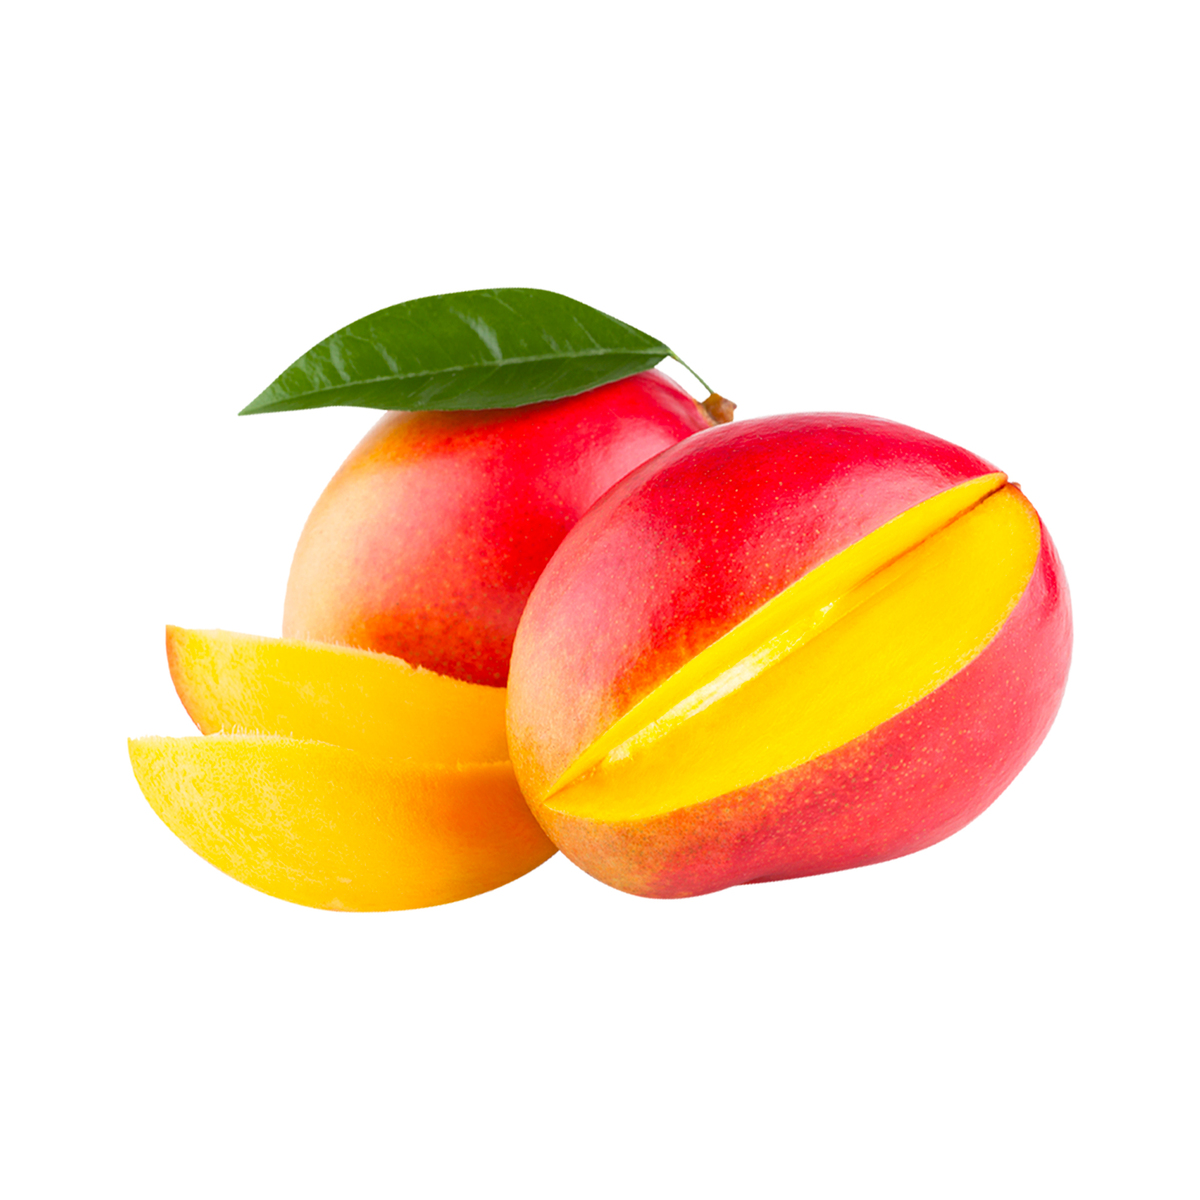 Buy Sindooram Mango India 1 kg Online at Best Price | Mangoes | Lulu Kuwait in UAE